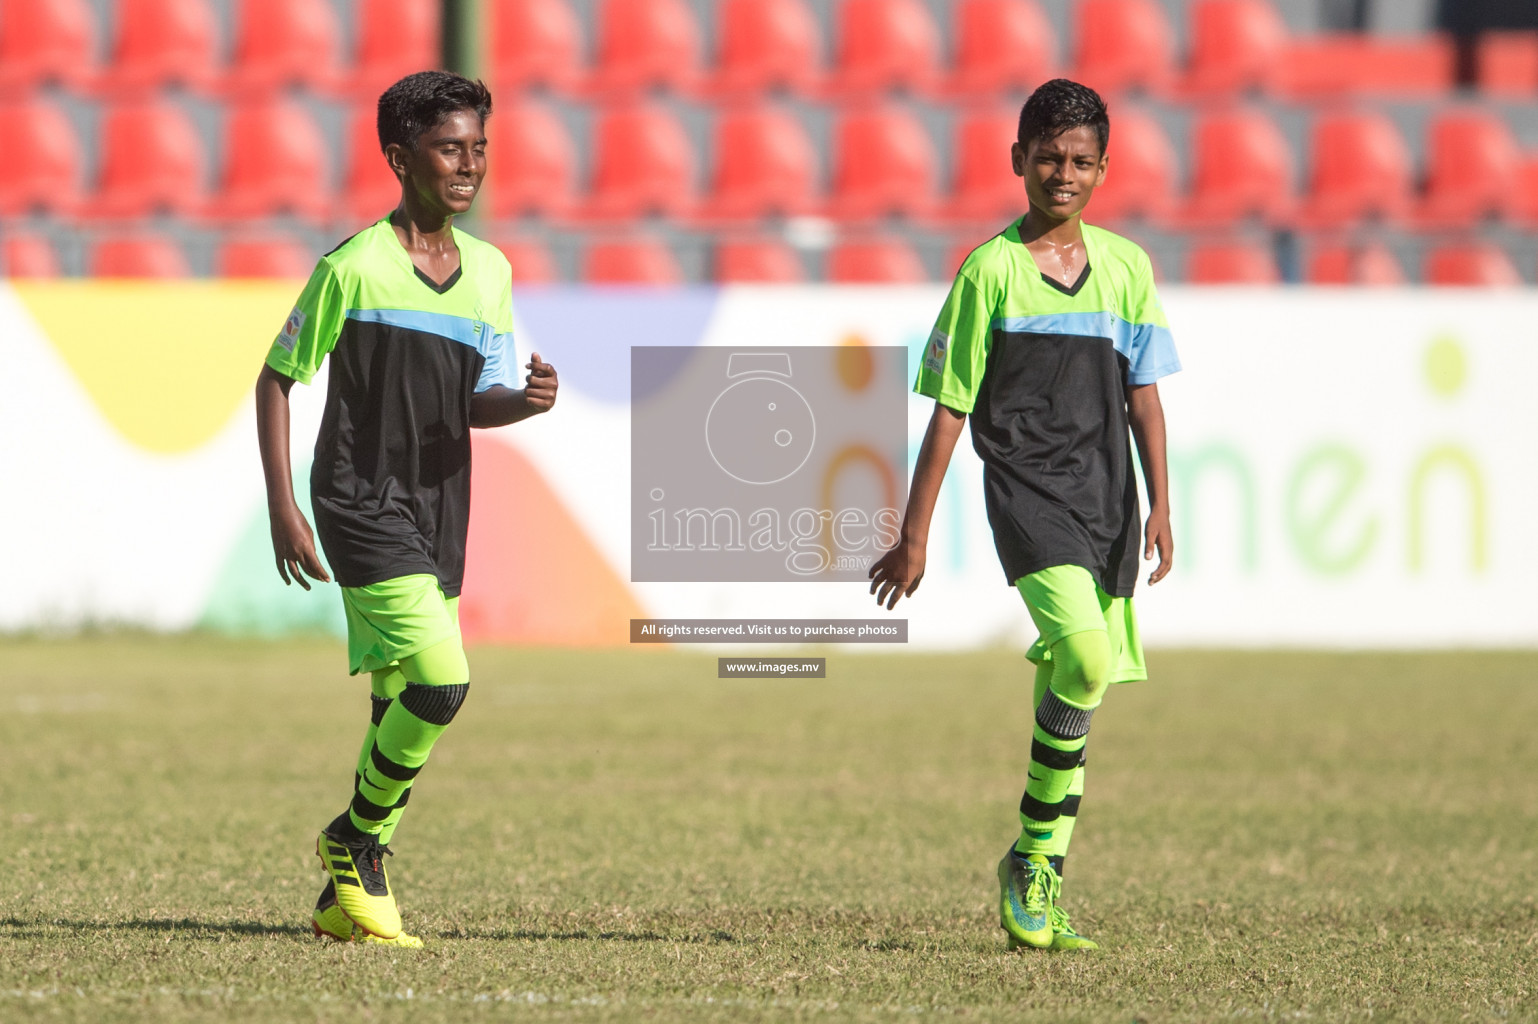 Imaduddin School vs Huravi School in MAMEN Inter School Football Tournament 2019 (U13) in Male, Maldives on 27th March 2019, Photos: Suadh Abdul Sattar / images.mv